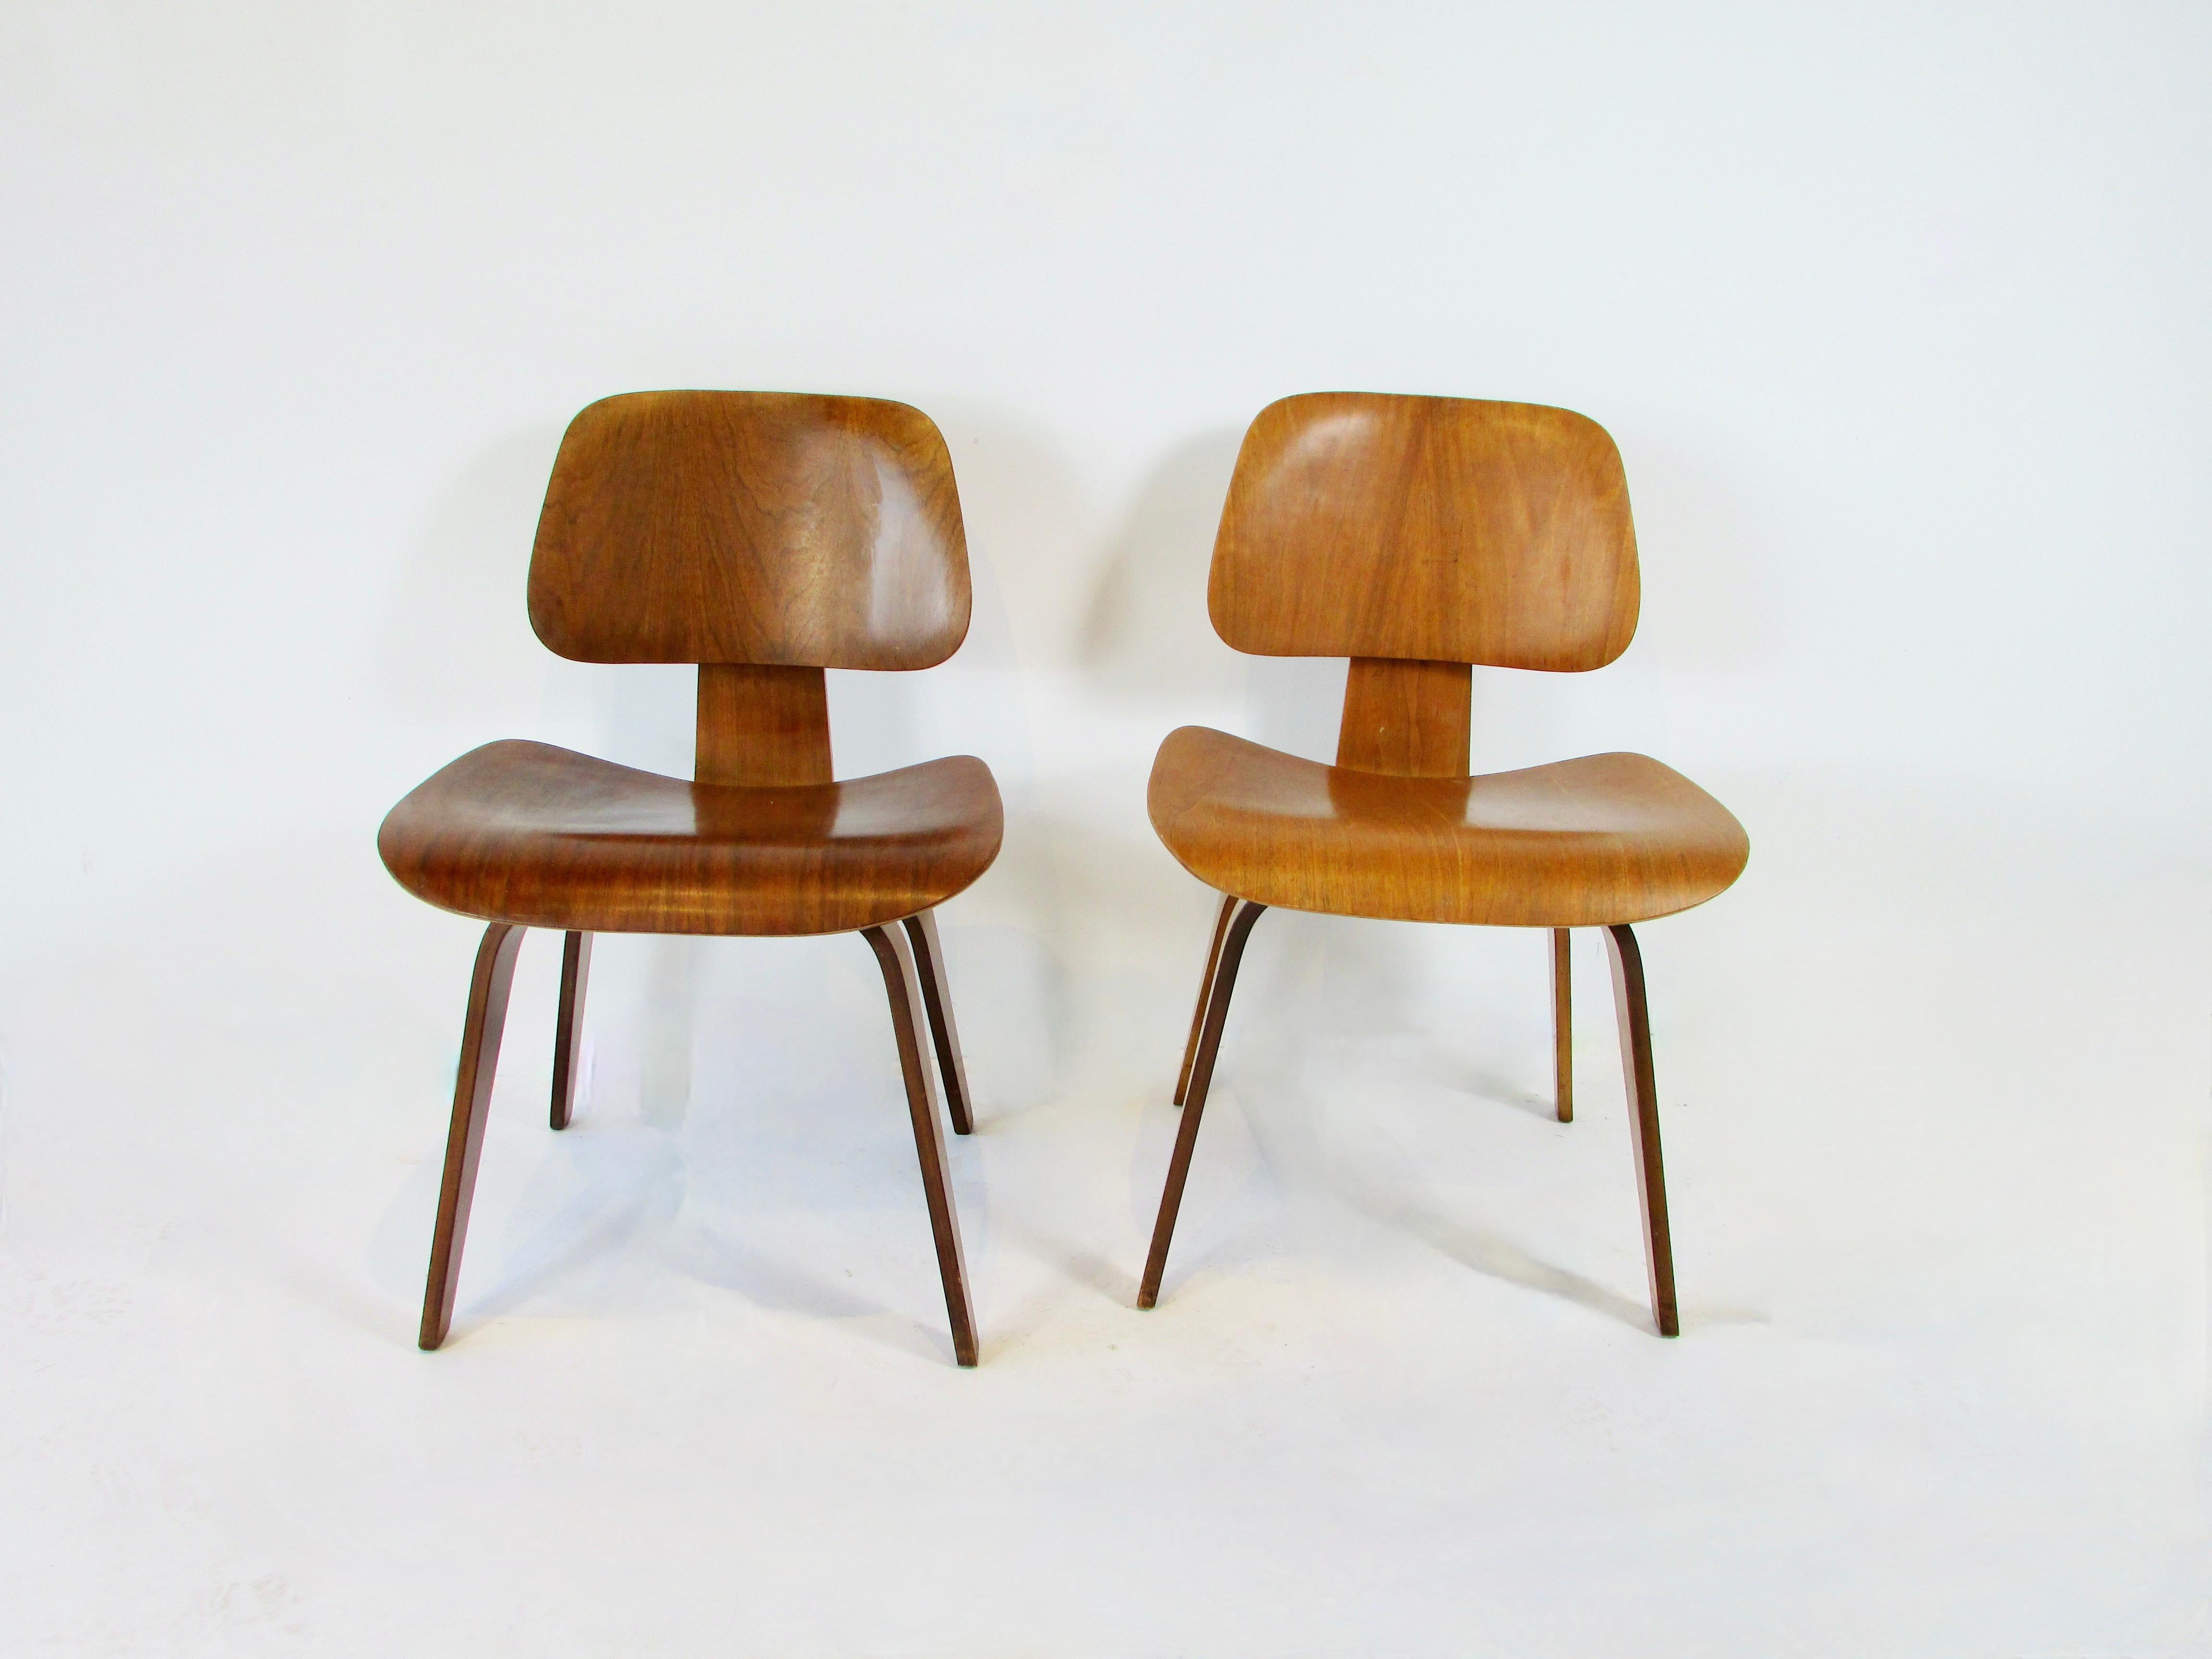 Zwei Herman Miller DCW (dining chair wood) Stühle. Aus dem Studio für Bürodesign von Charles und Ray Eames . Beide Stühle sind in Nussbaum ausgeführt. Sie werden einzeln verrechnet. Nachlassfrisch in originaler, abgenutzter Ausführung. 